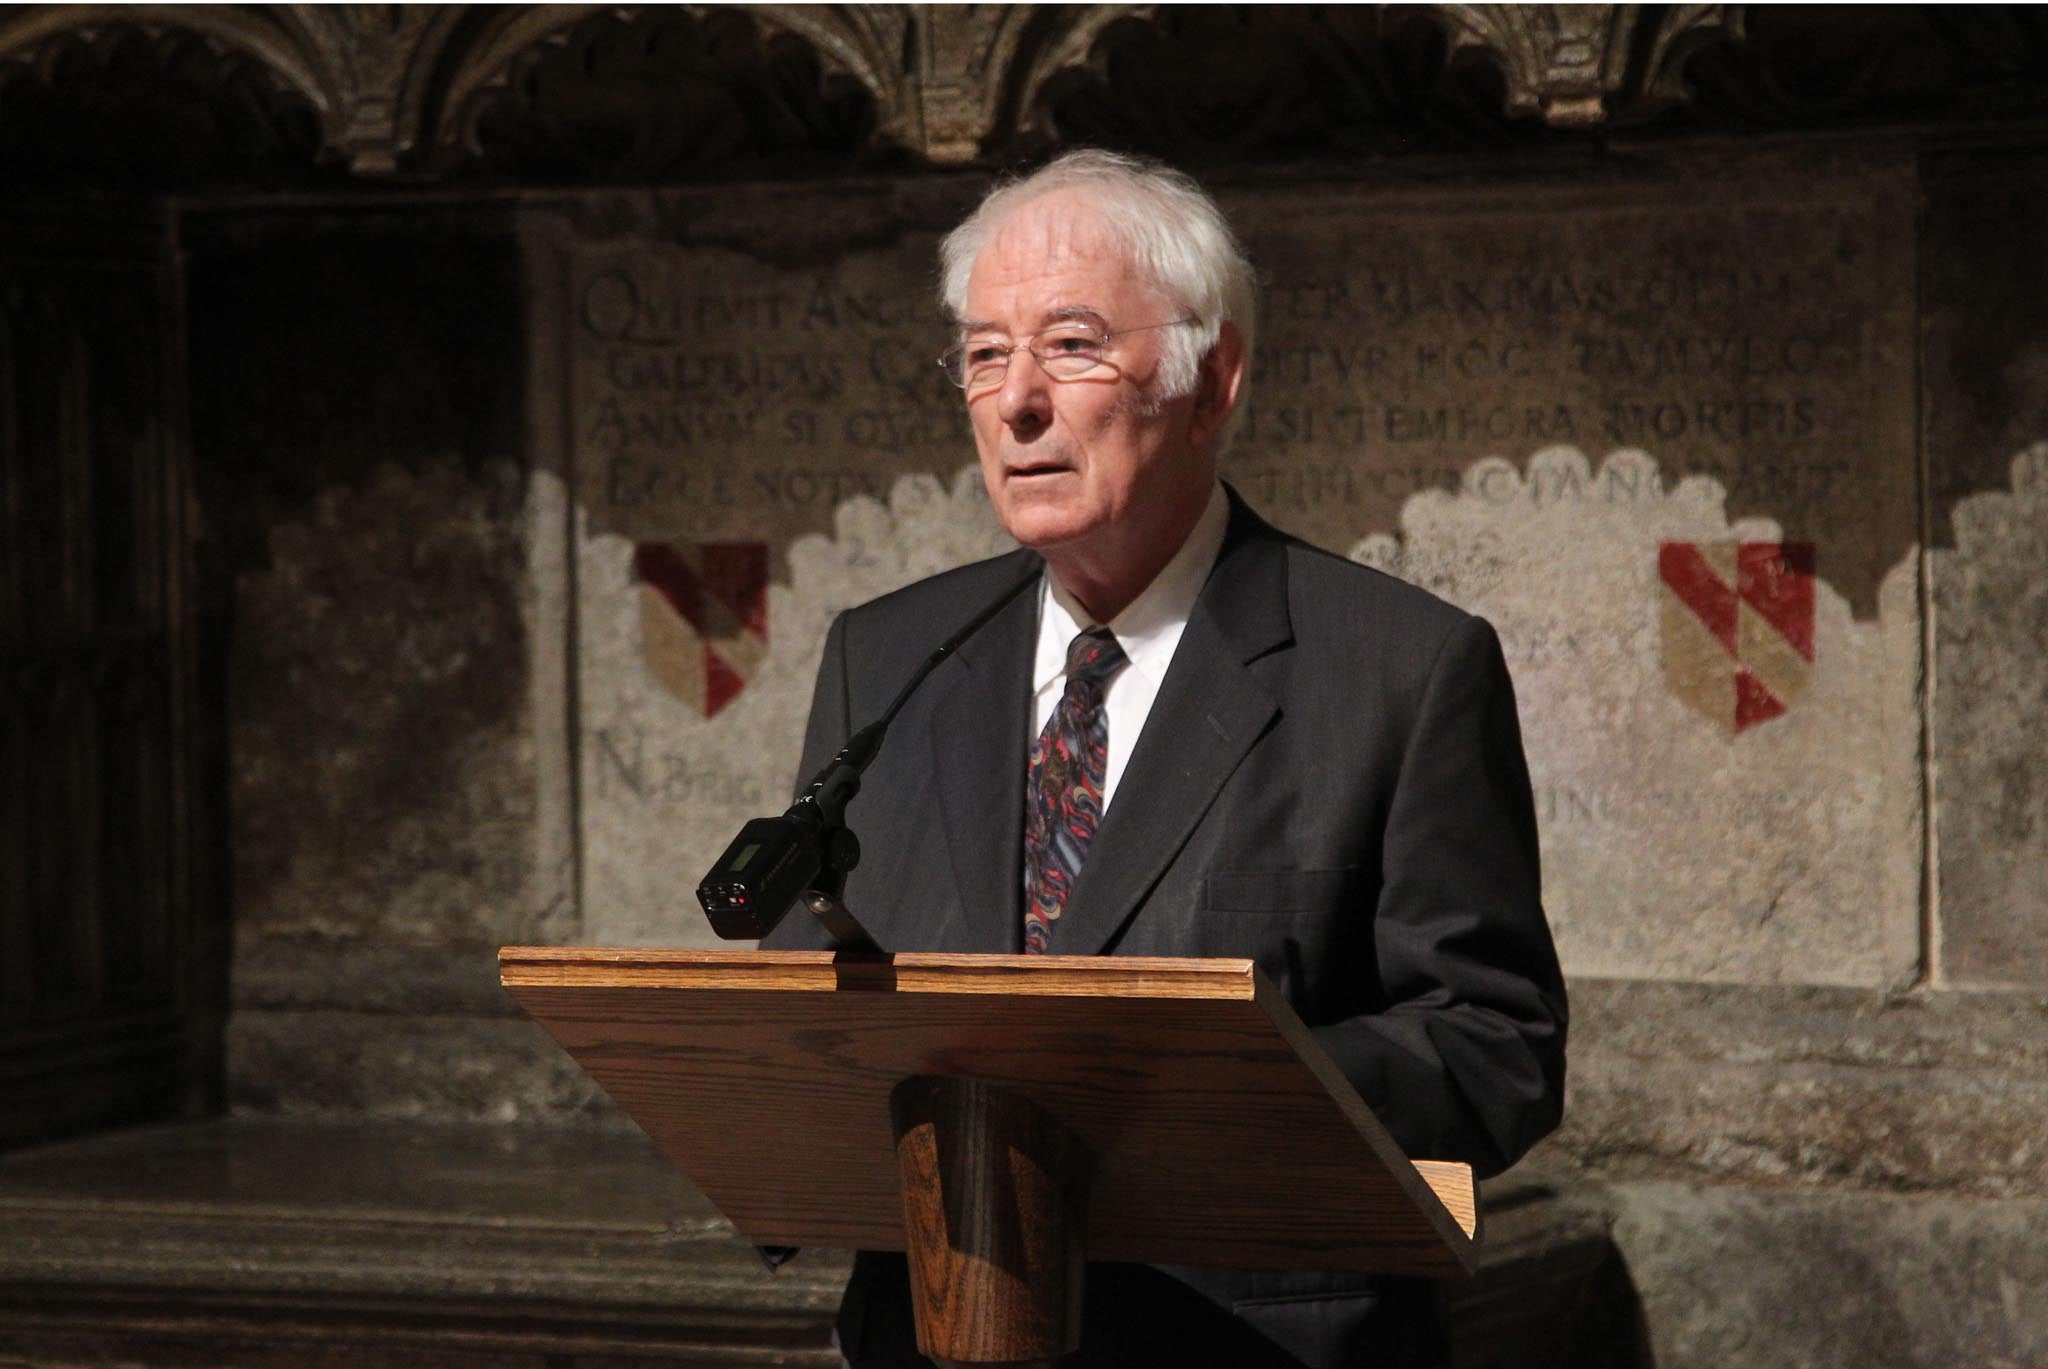 Seamus Heaney speaking at Poet's Corner in Westminster Abbey